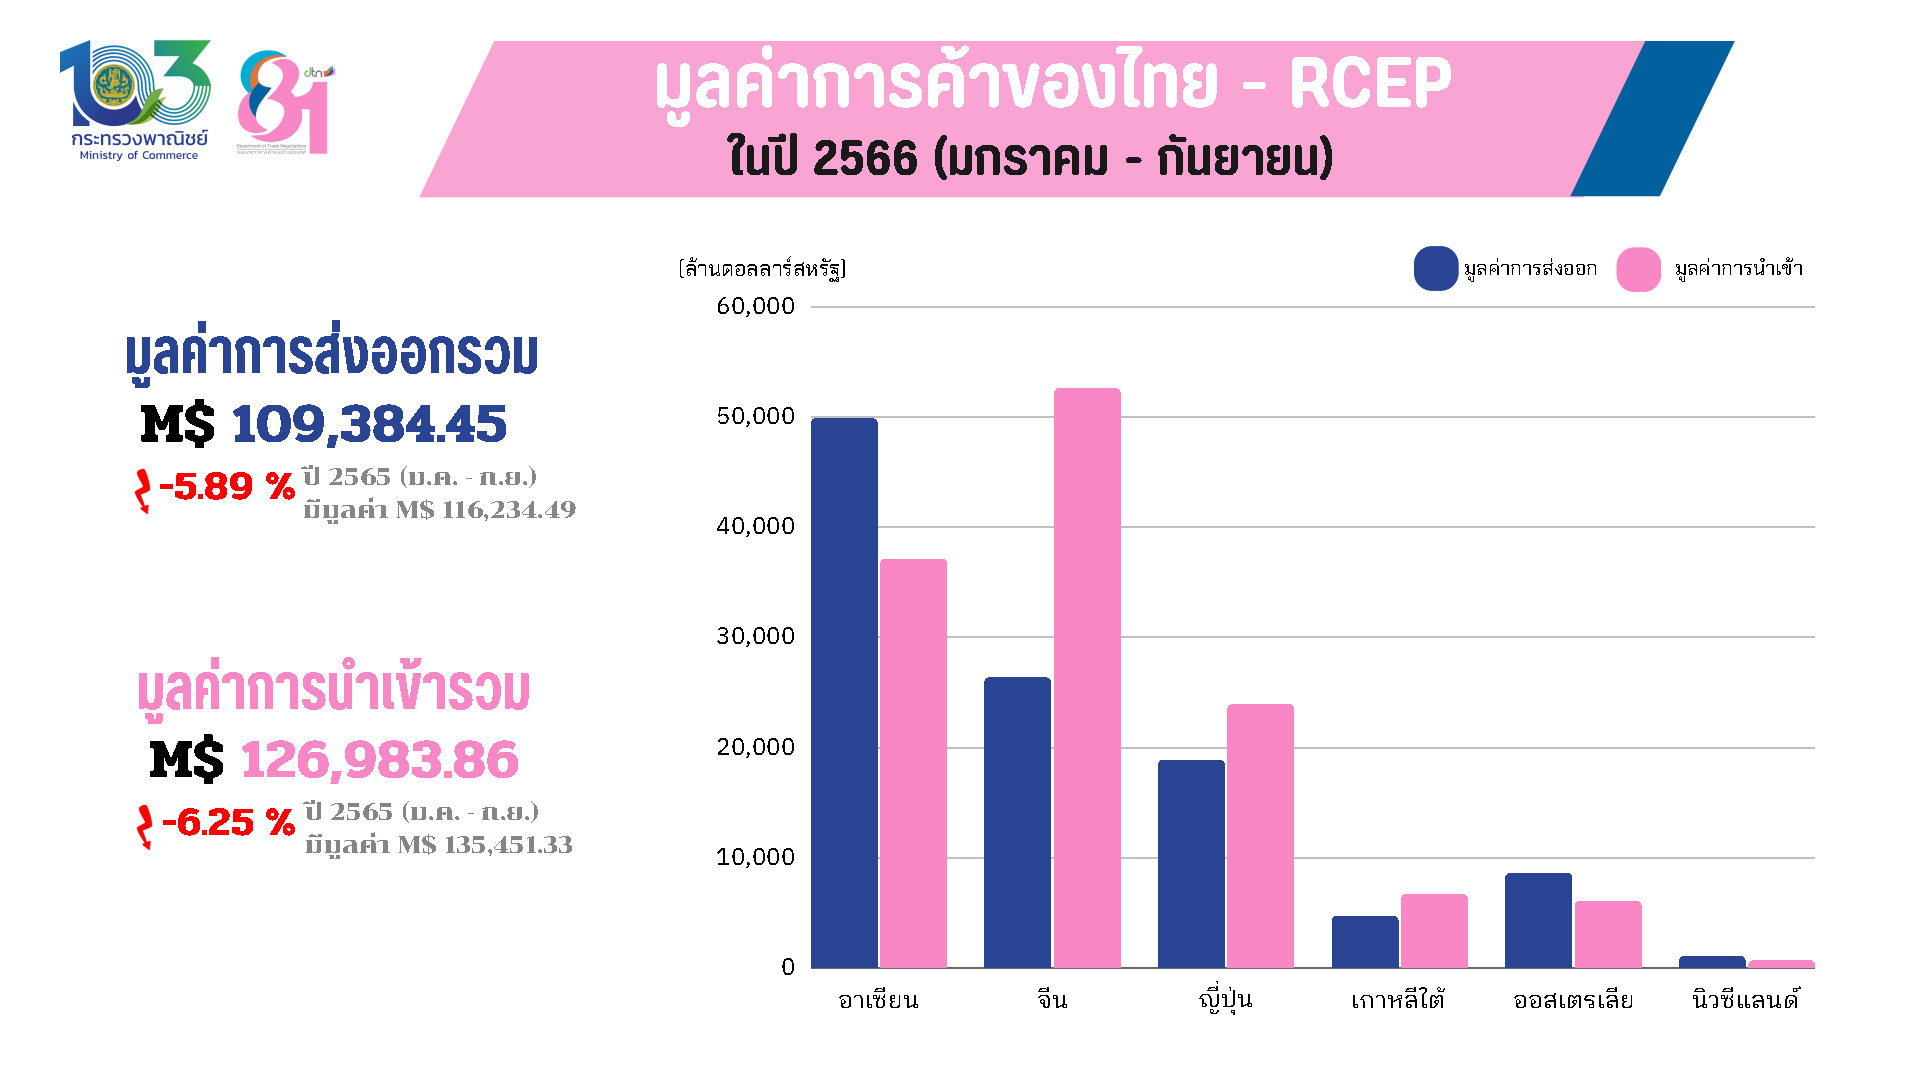 การค้าของไทยกับกลุ่มประเทศ RCEP ปี 2566 (ม.ค. - ก.ย.)